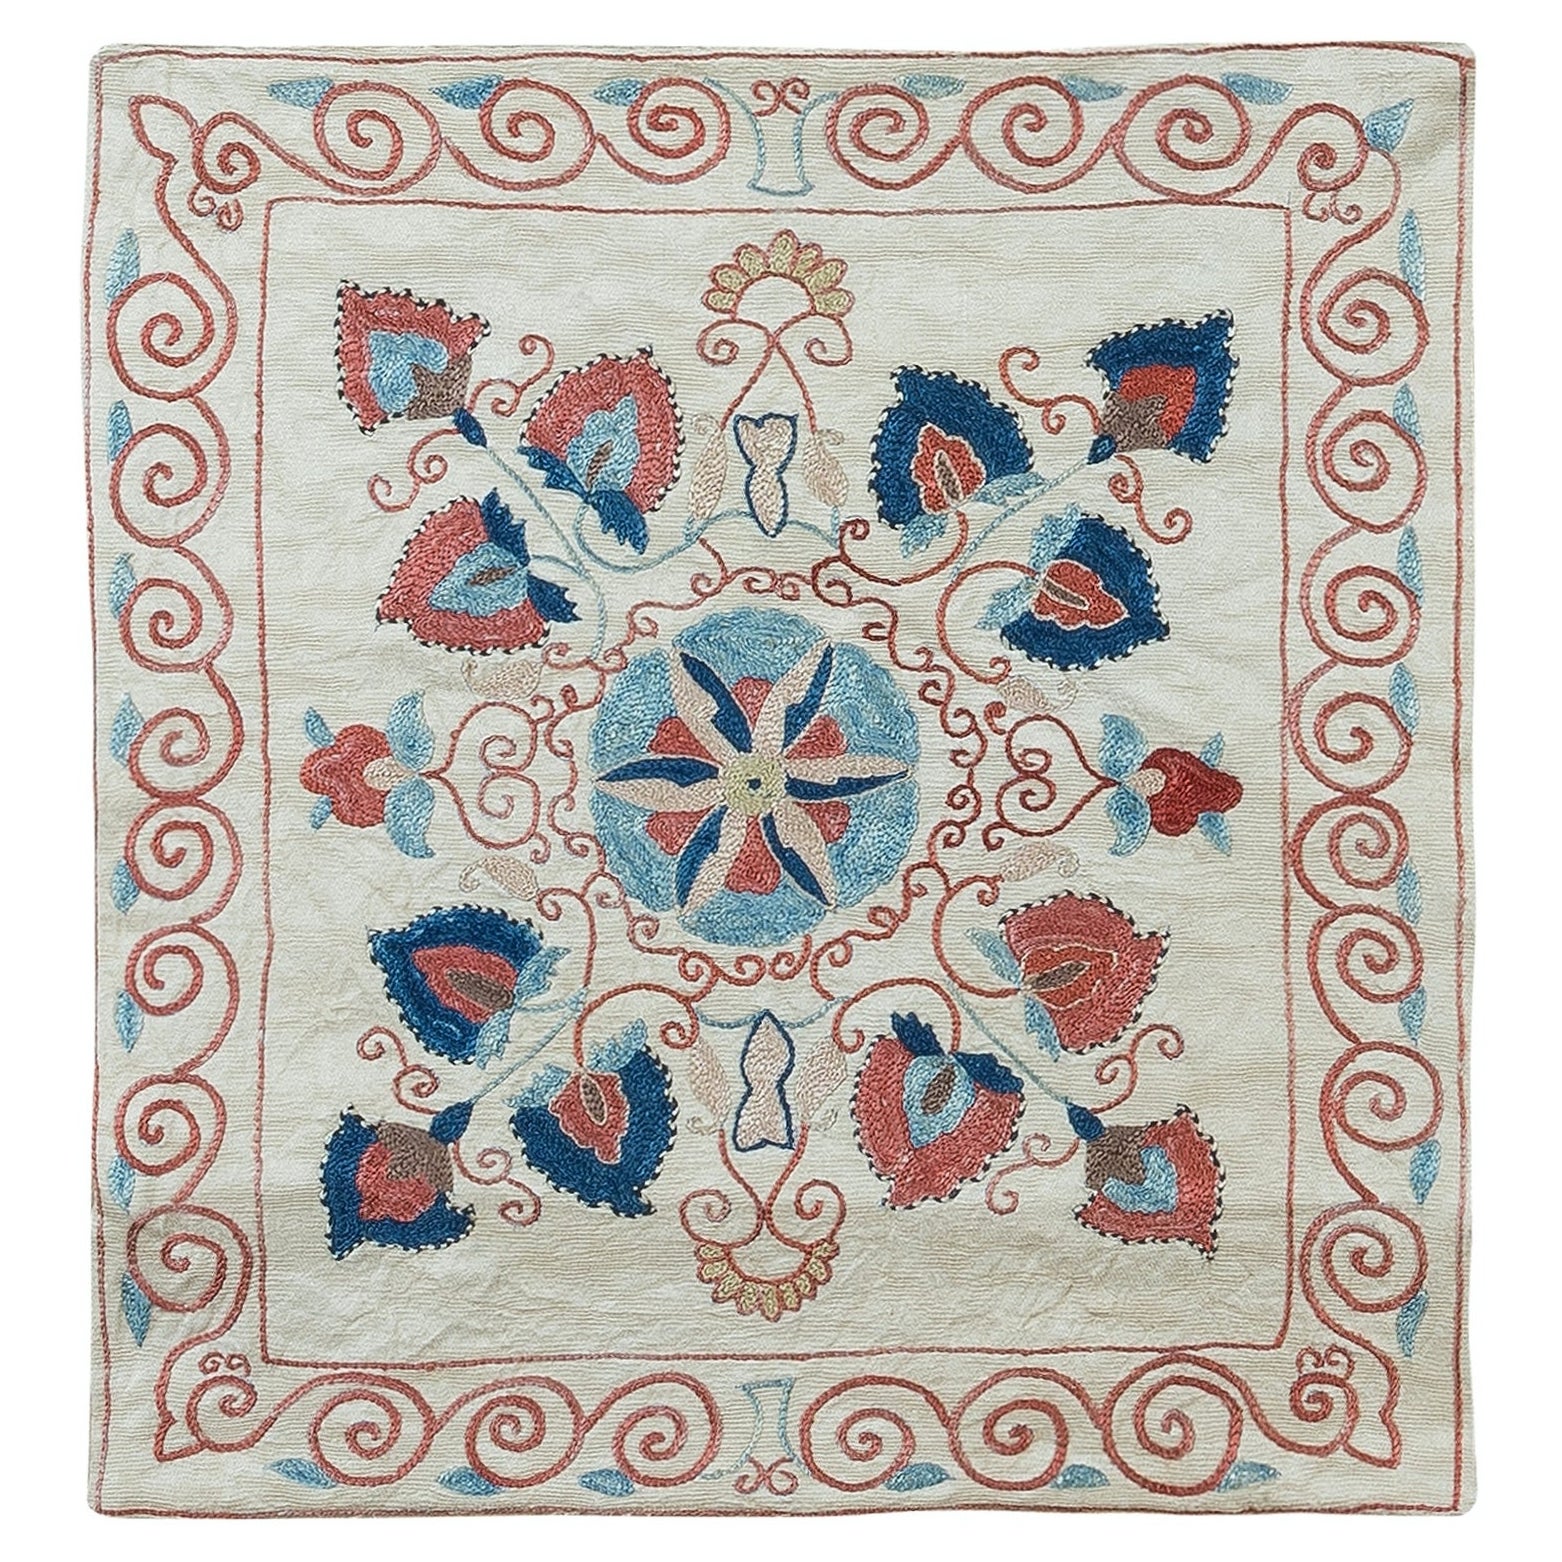 Coussin décoratif Suzani 19"x20" entièrement recouvert d'un coussin en soie, broderie à la main